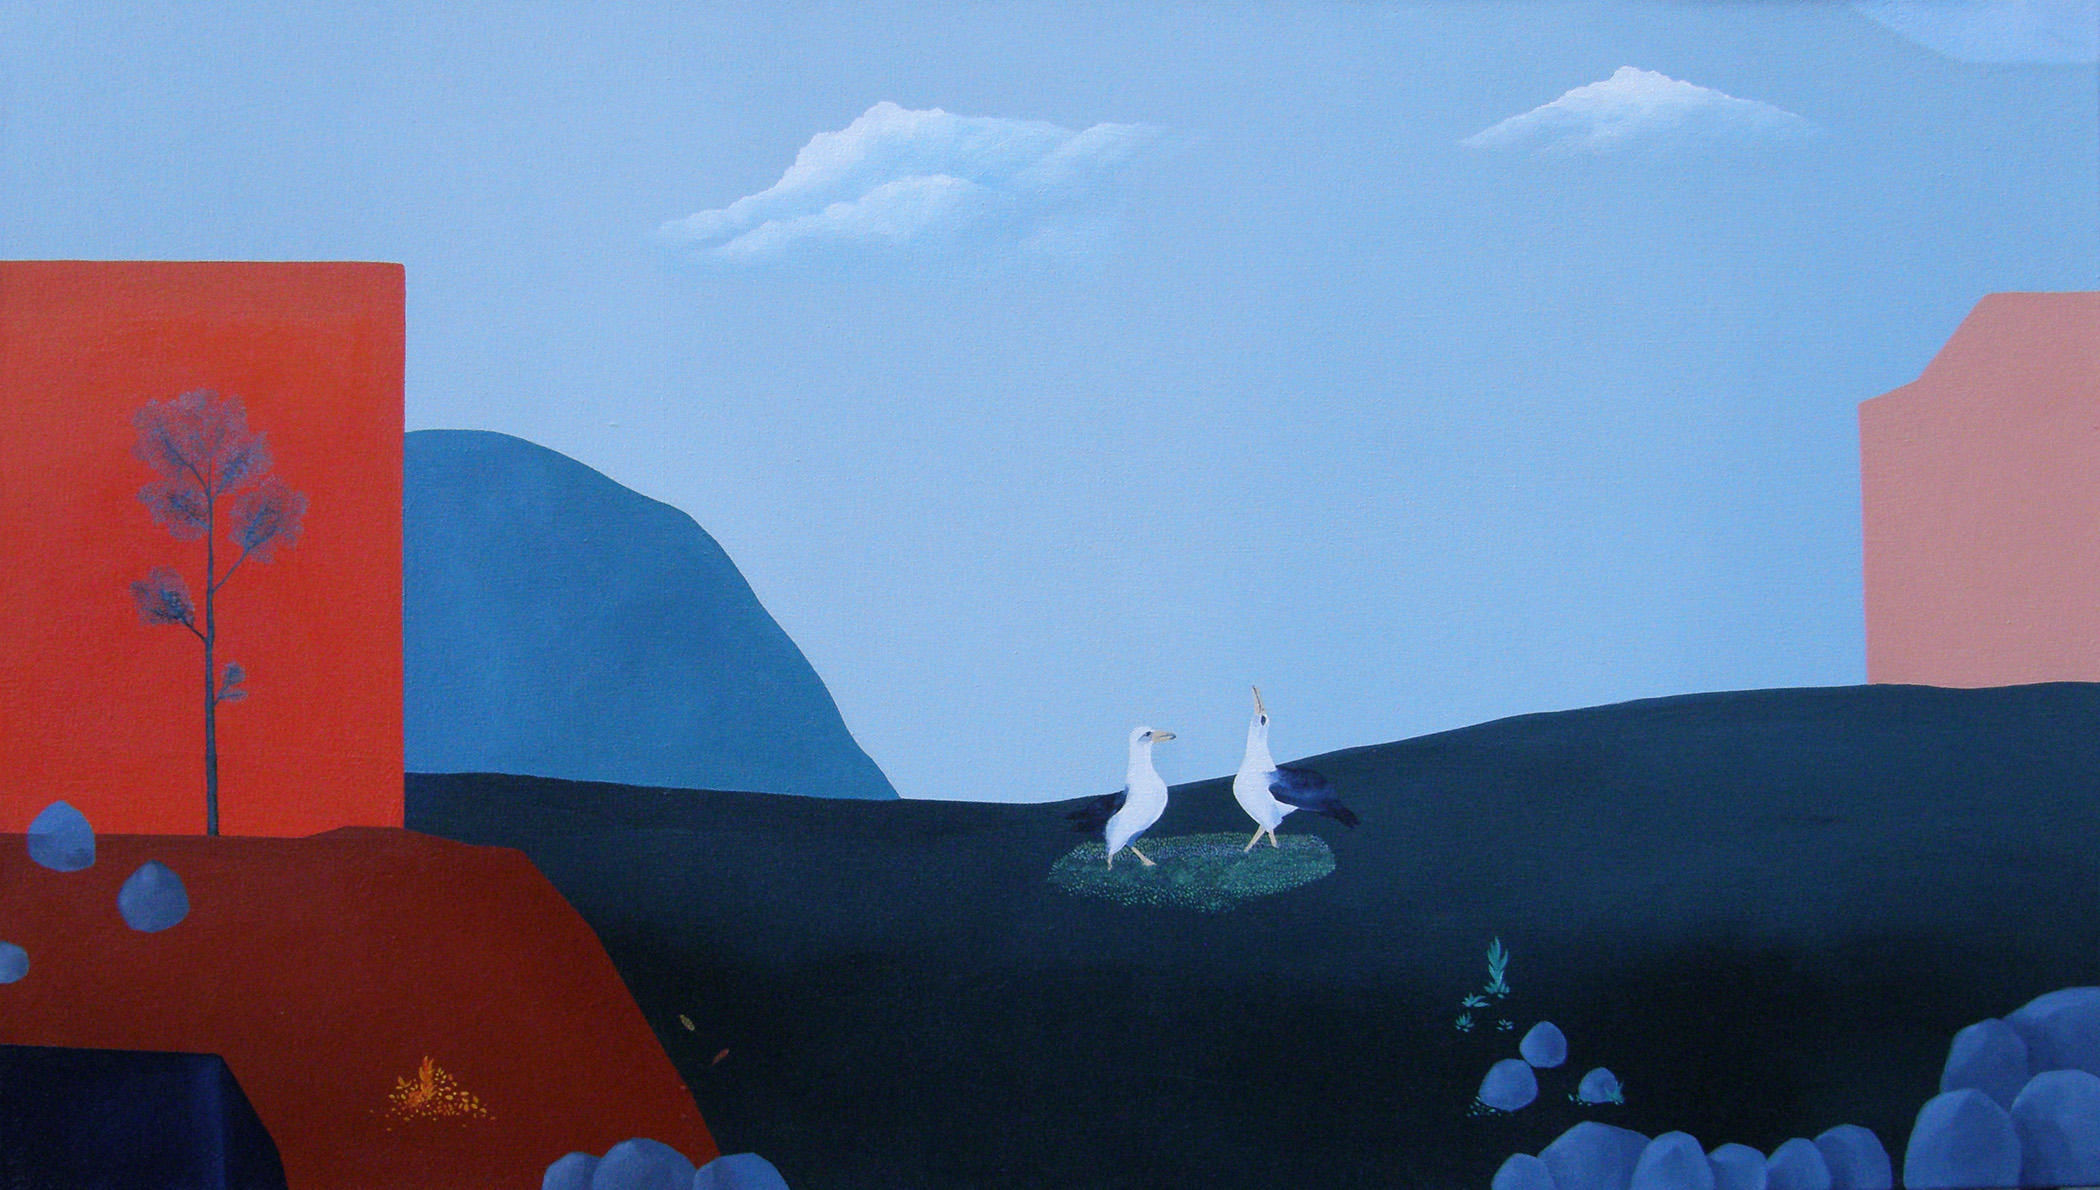 Arbol sobre rojo, conversacion, 2014, acrylic on canvas, 65 x 114 cm.